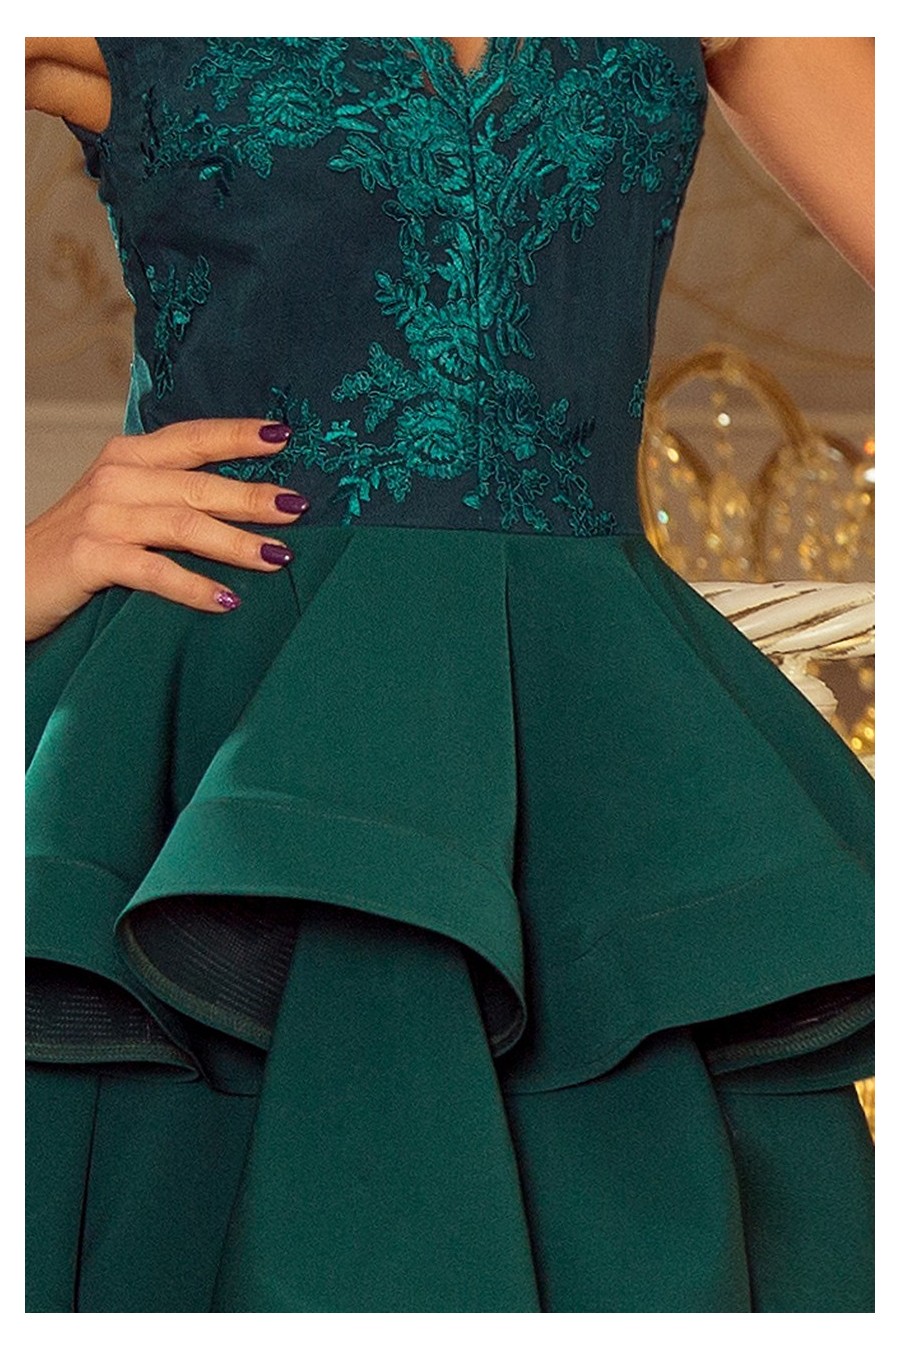 200-6 CHARLOTTE - Exkluzivní šaty s krajkou výstřihem - zelené